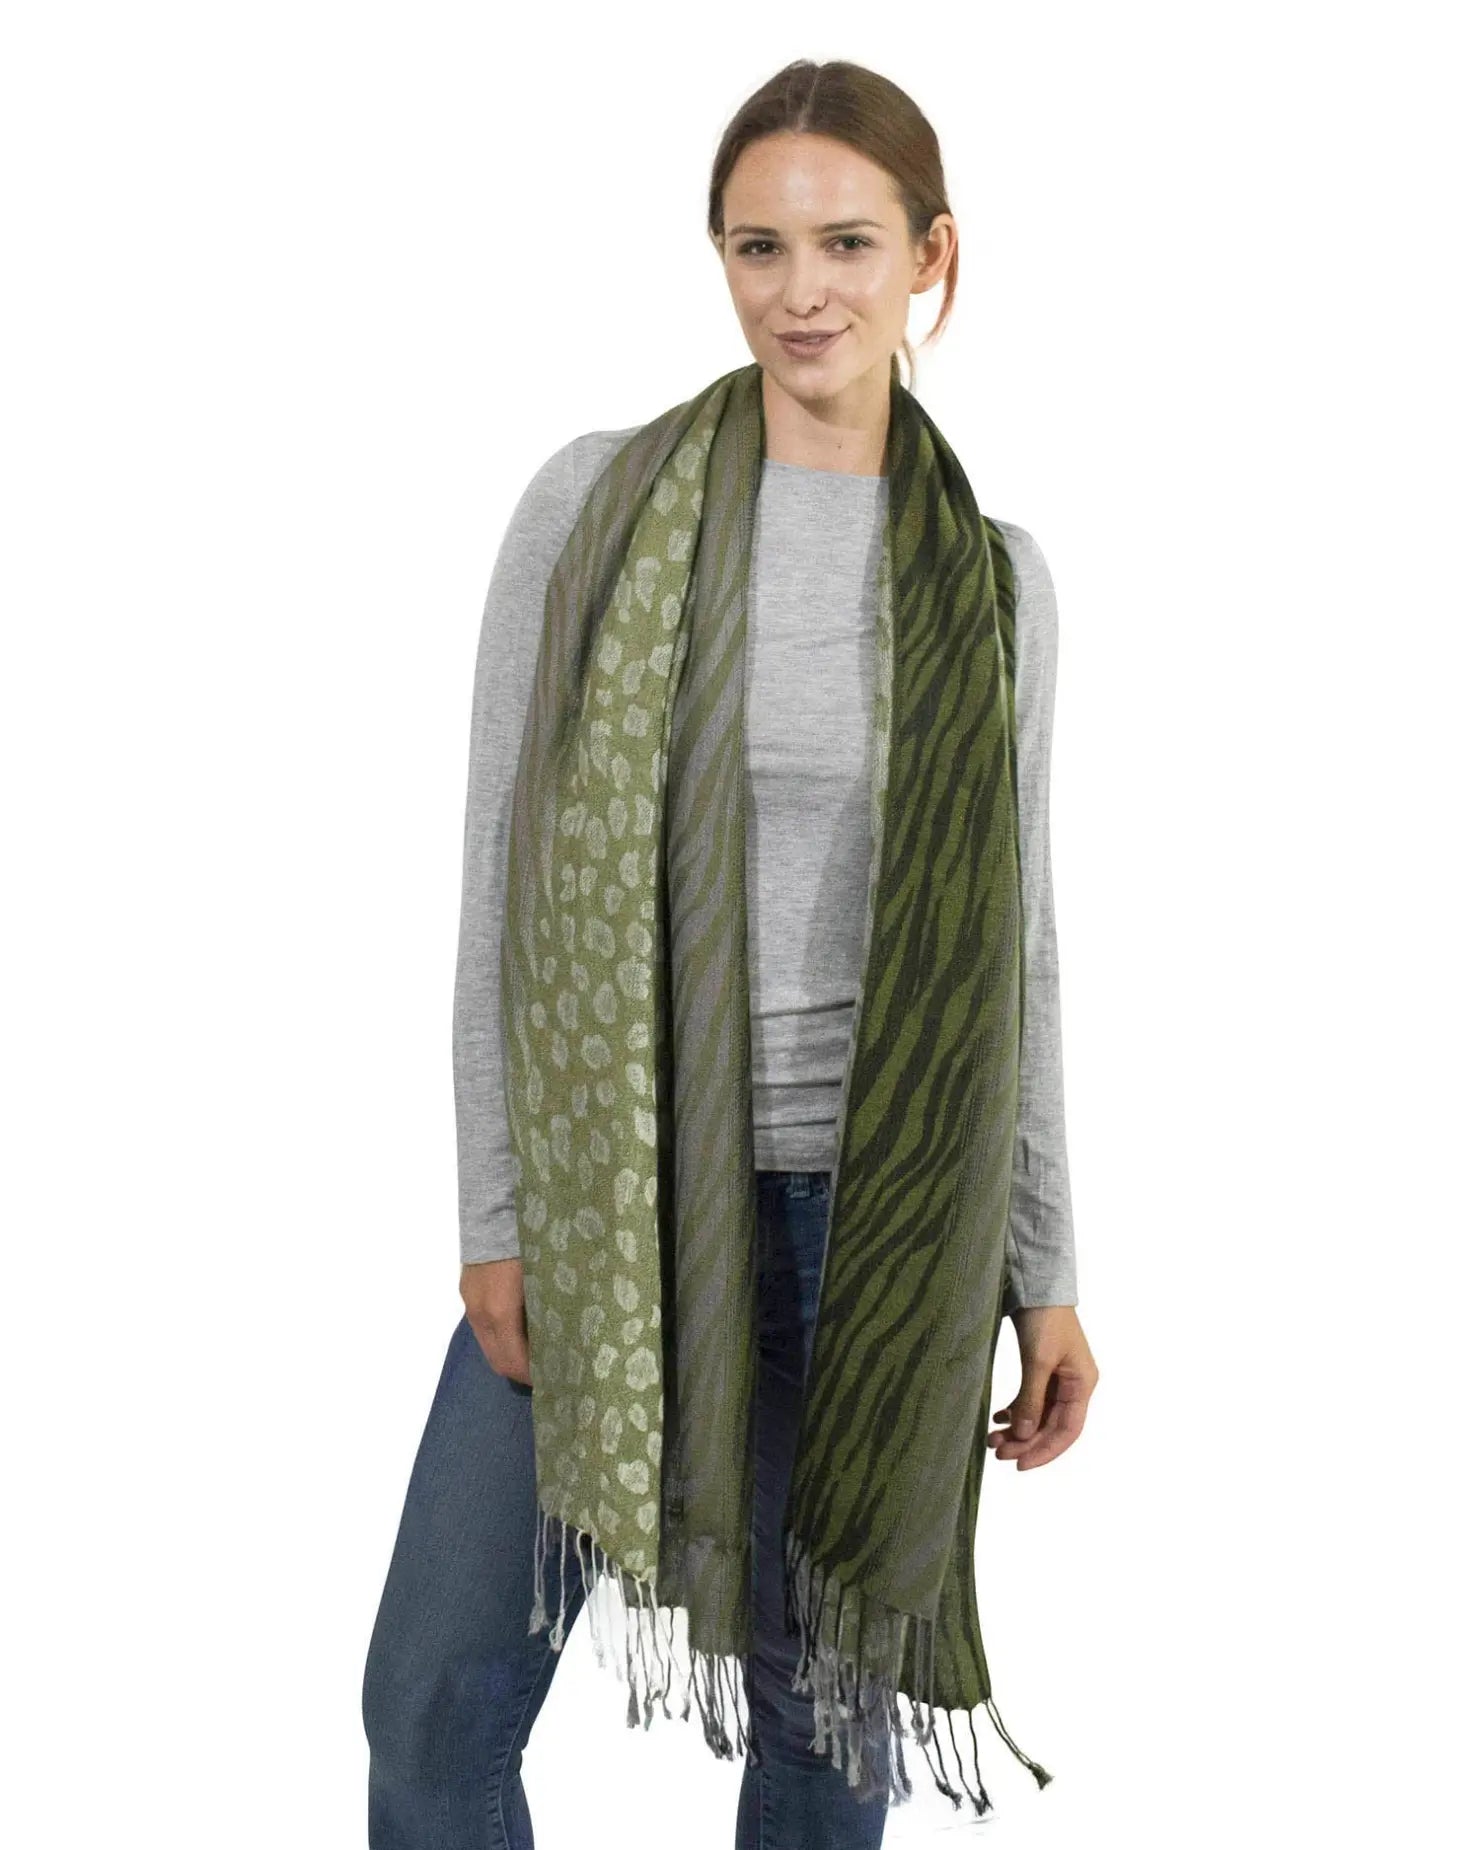 Woman wearing green leopard print tasselled scarf.